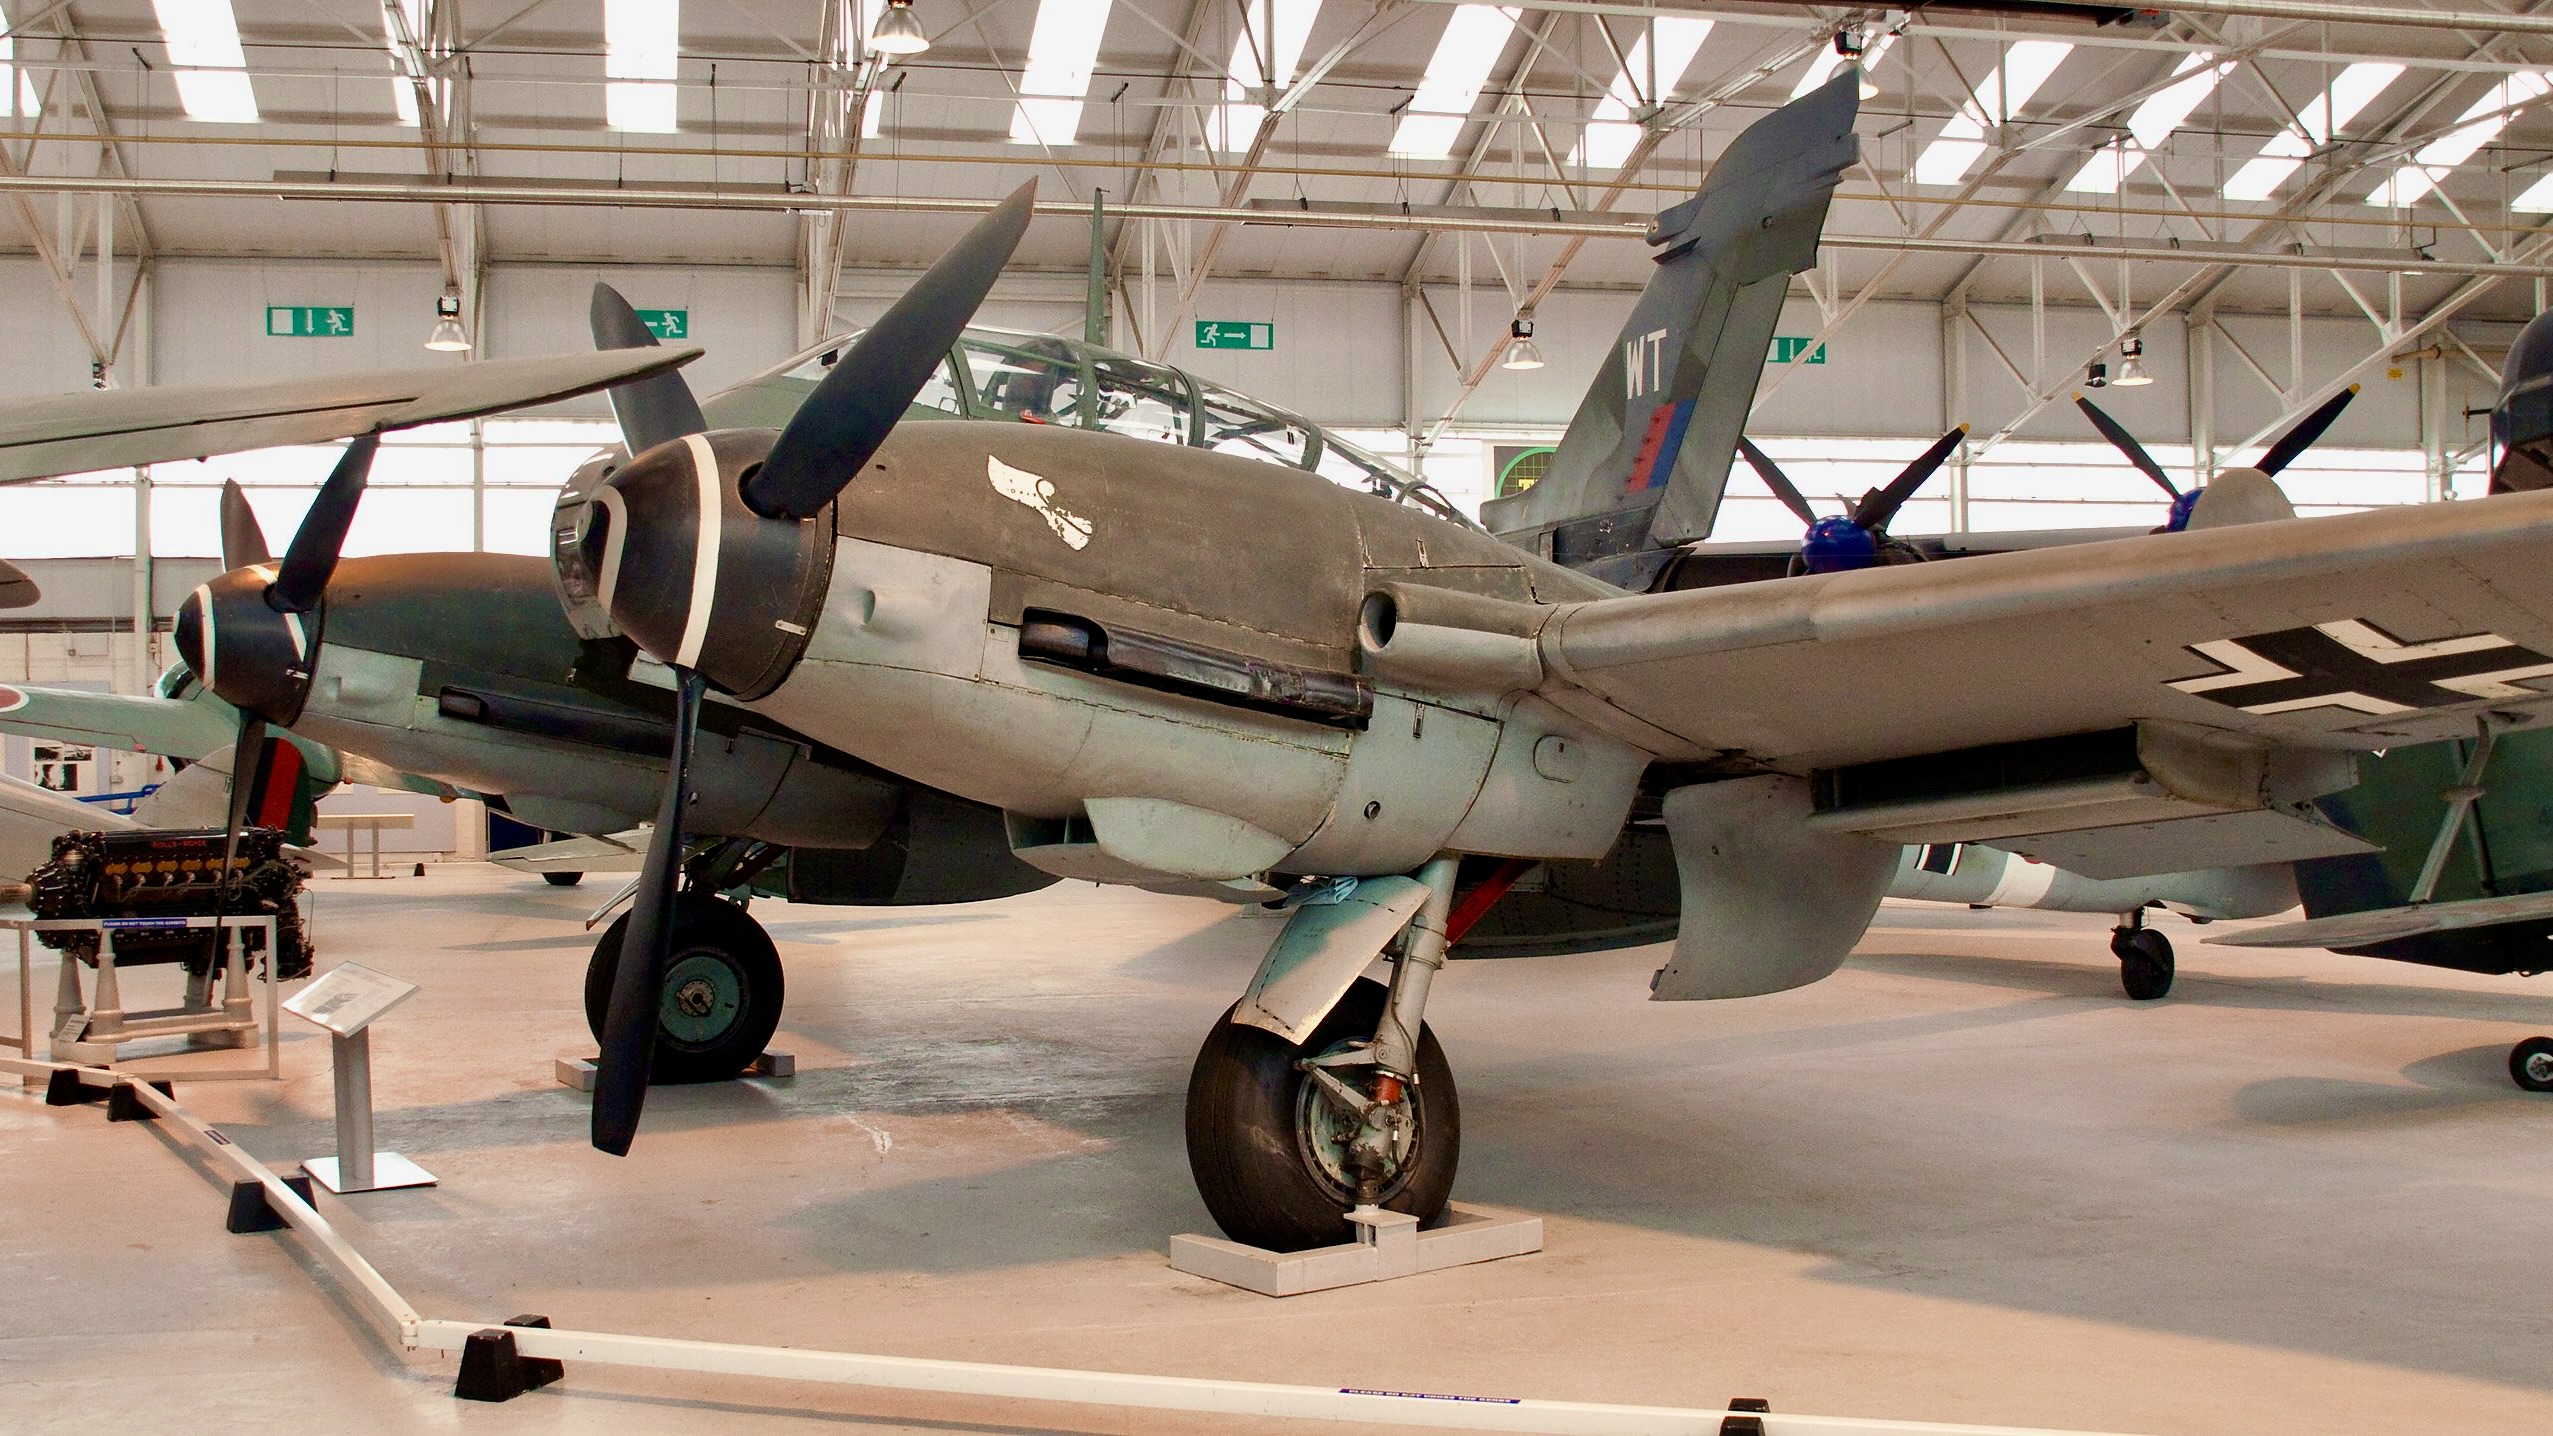 Messerschmitt Me 410 Hornisse ("Hornet") was a Luftwaffe heavy fighter and Schnellbomber of World War II